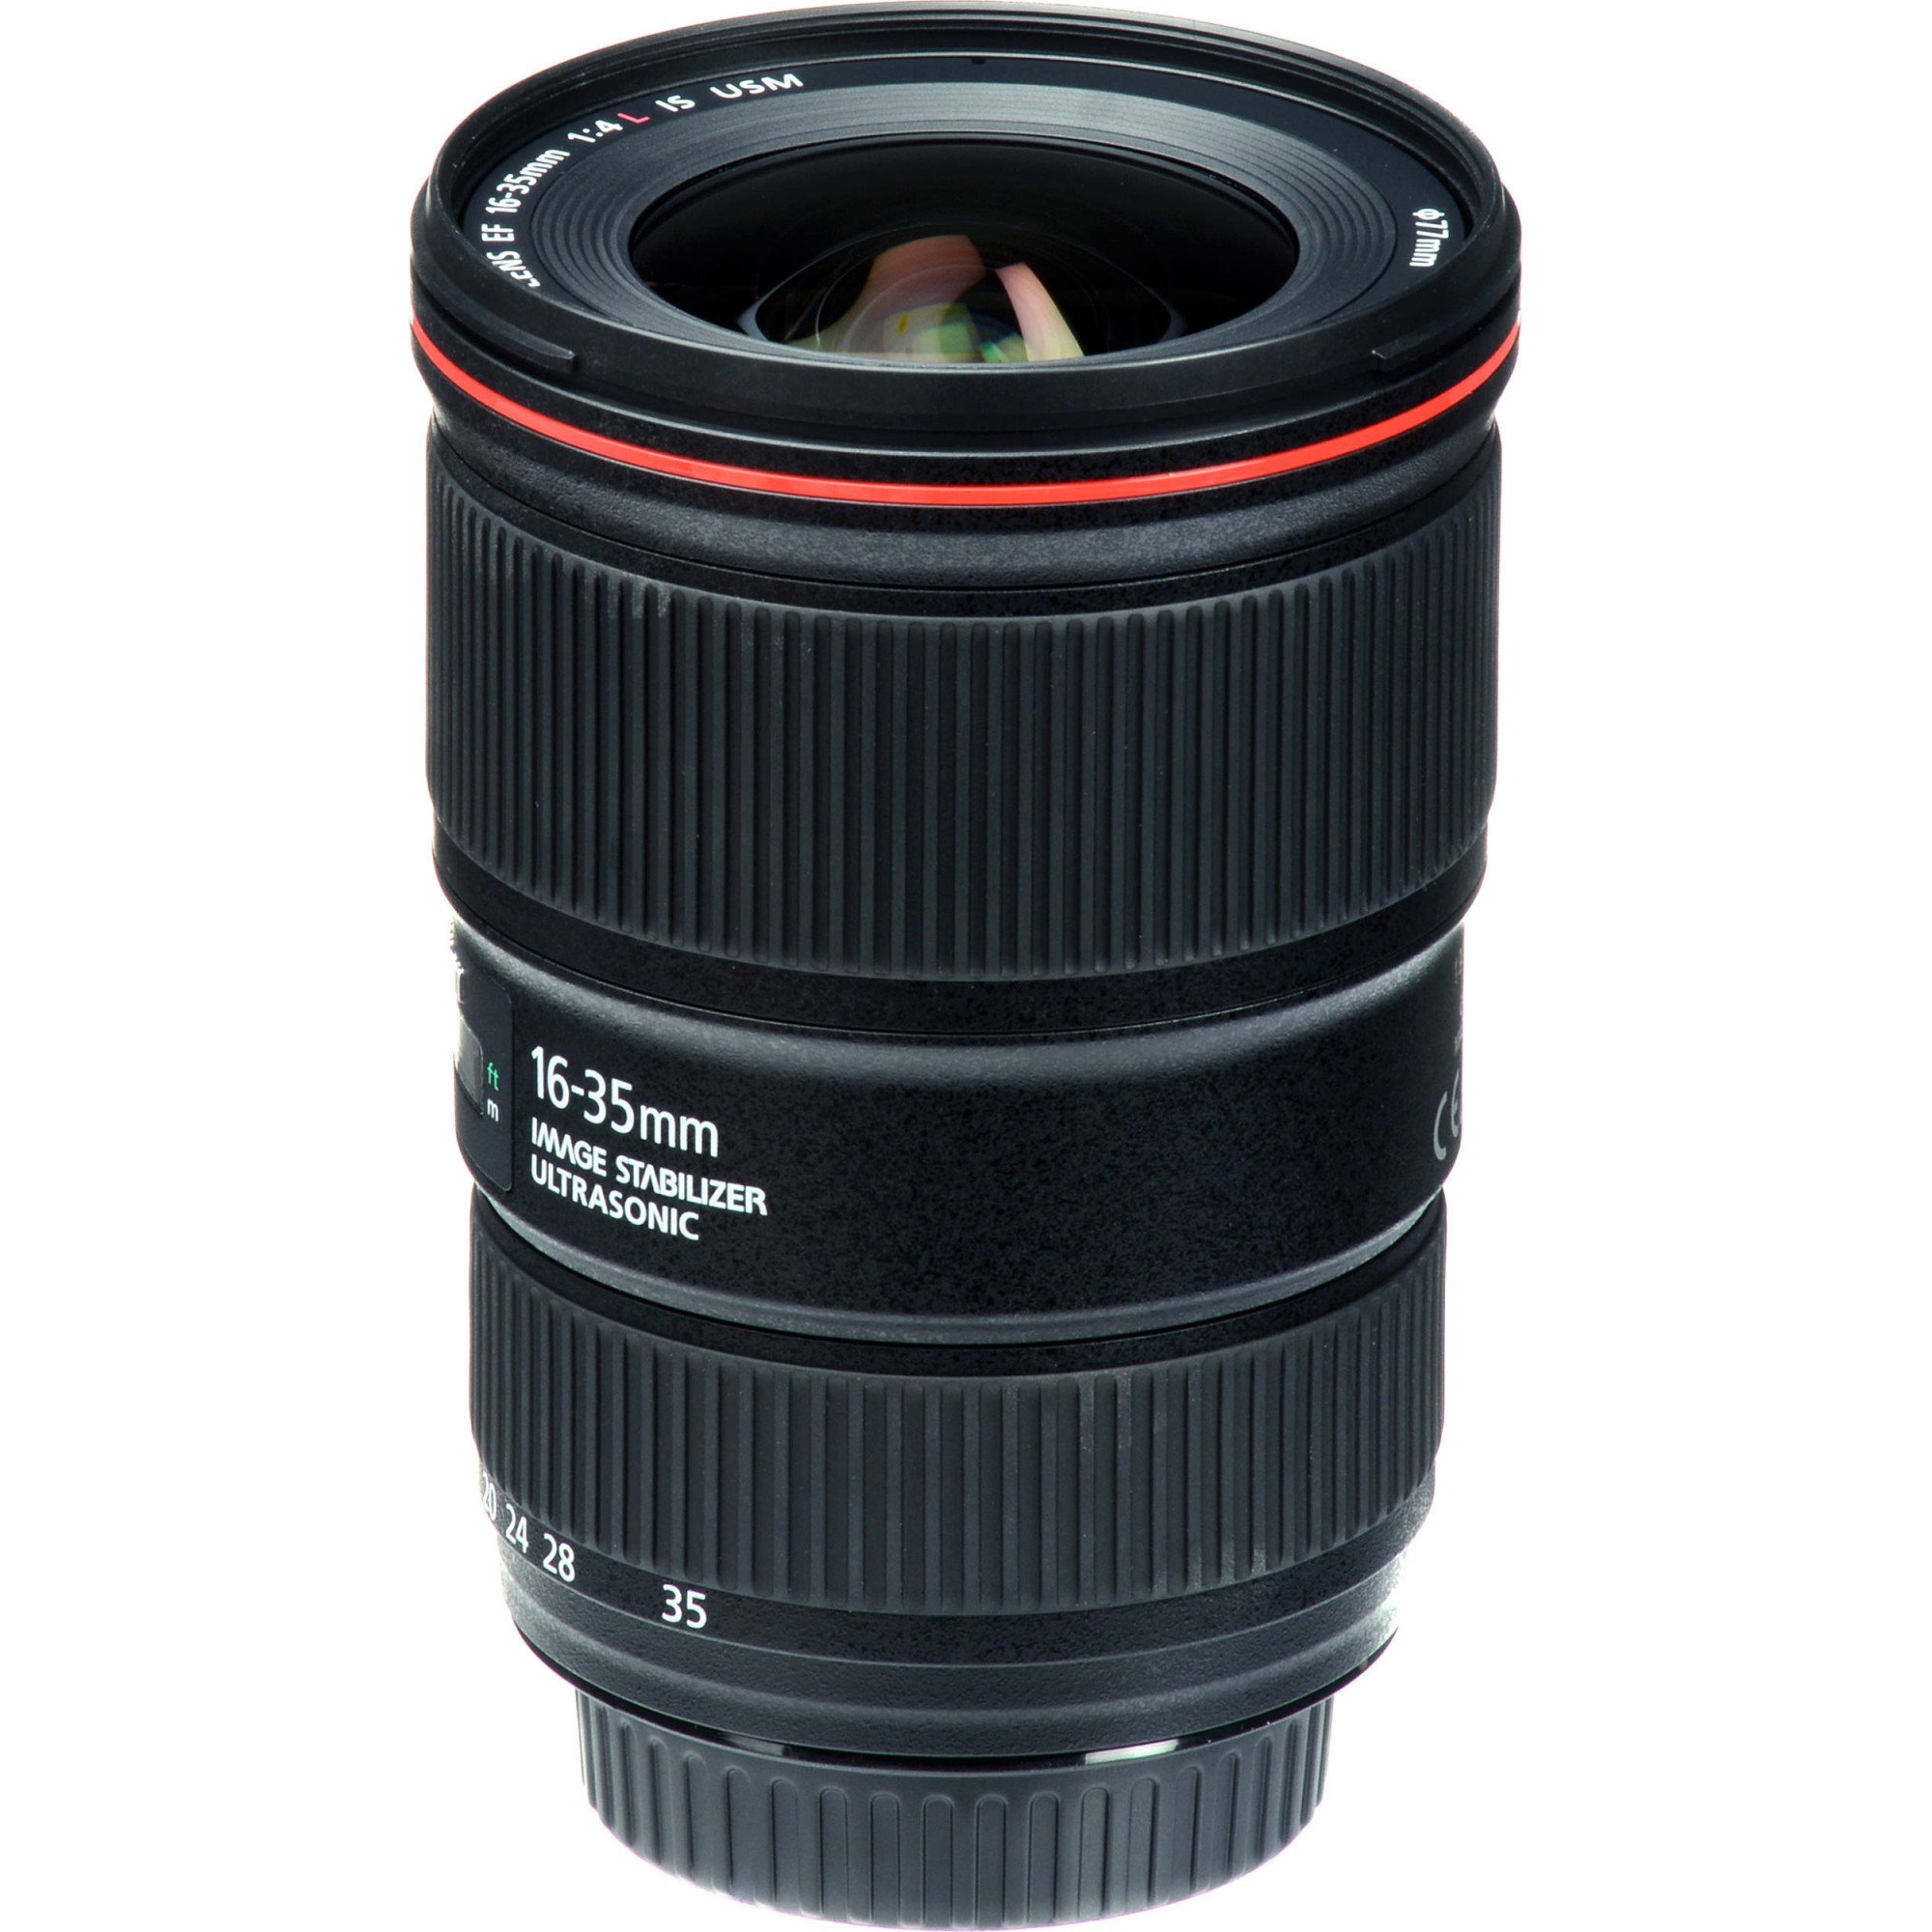 Ống kính Canon EF 16-35mm f/4L IS USM Canon | Chính hãng VJShop.vn